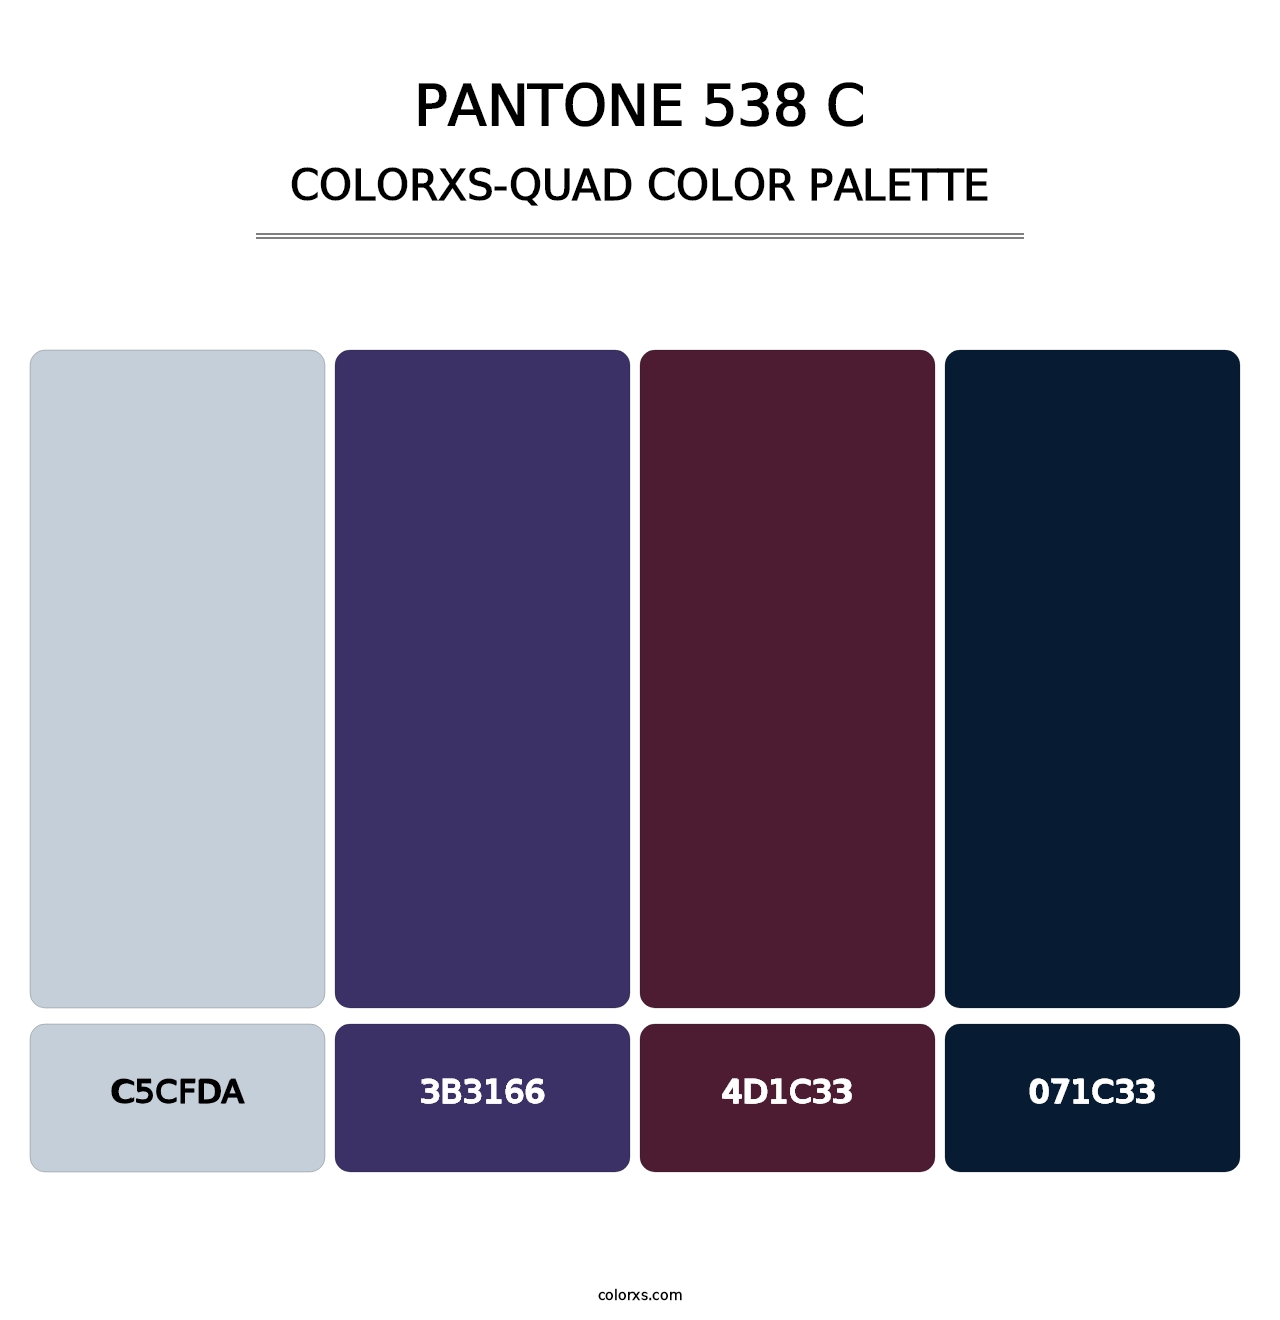 PANTONE 538 C - Colorxs Quad Palette